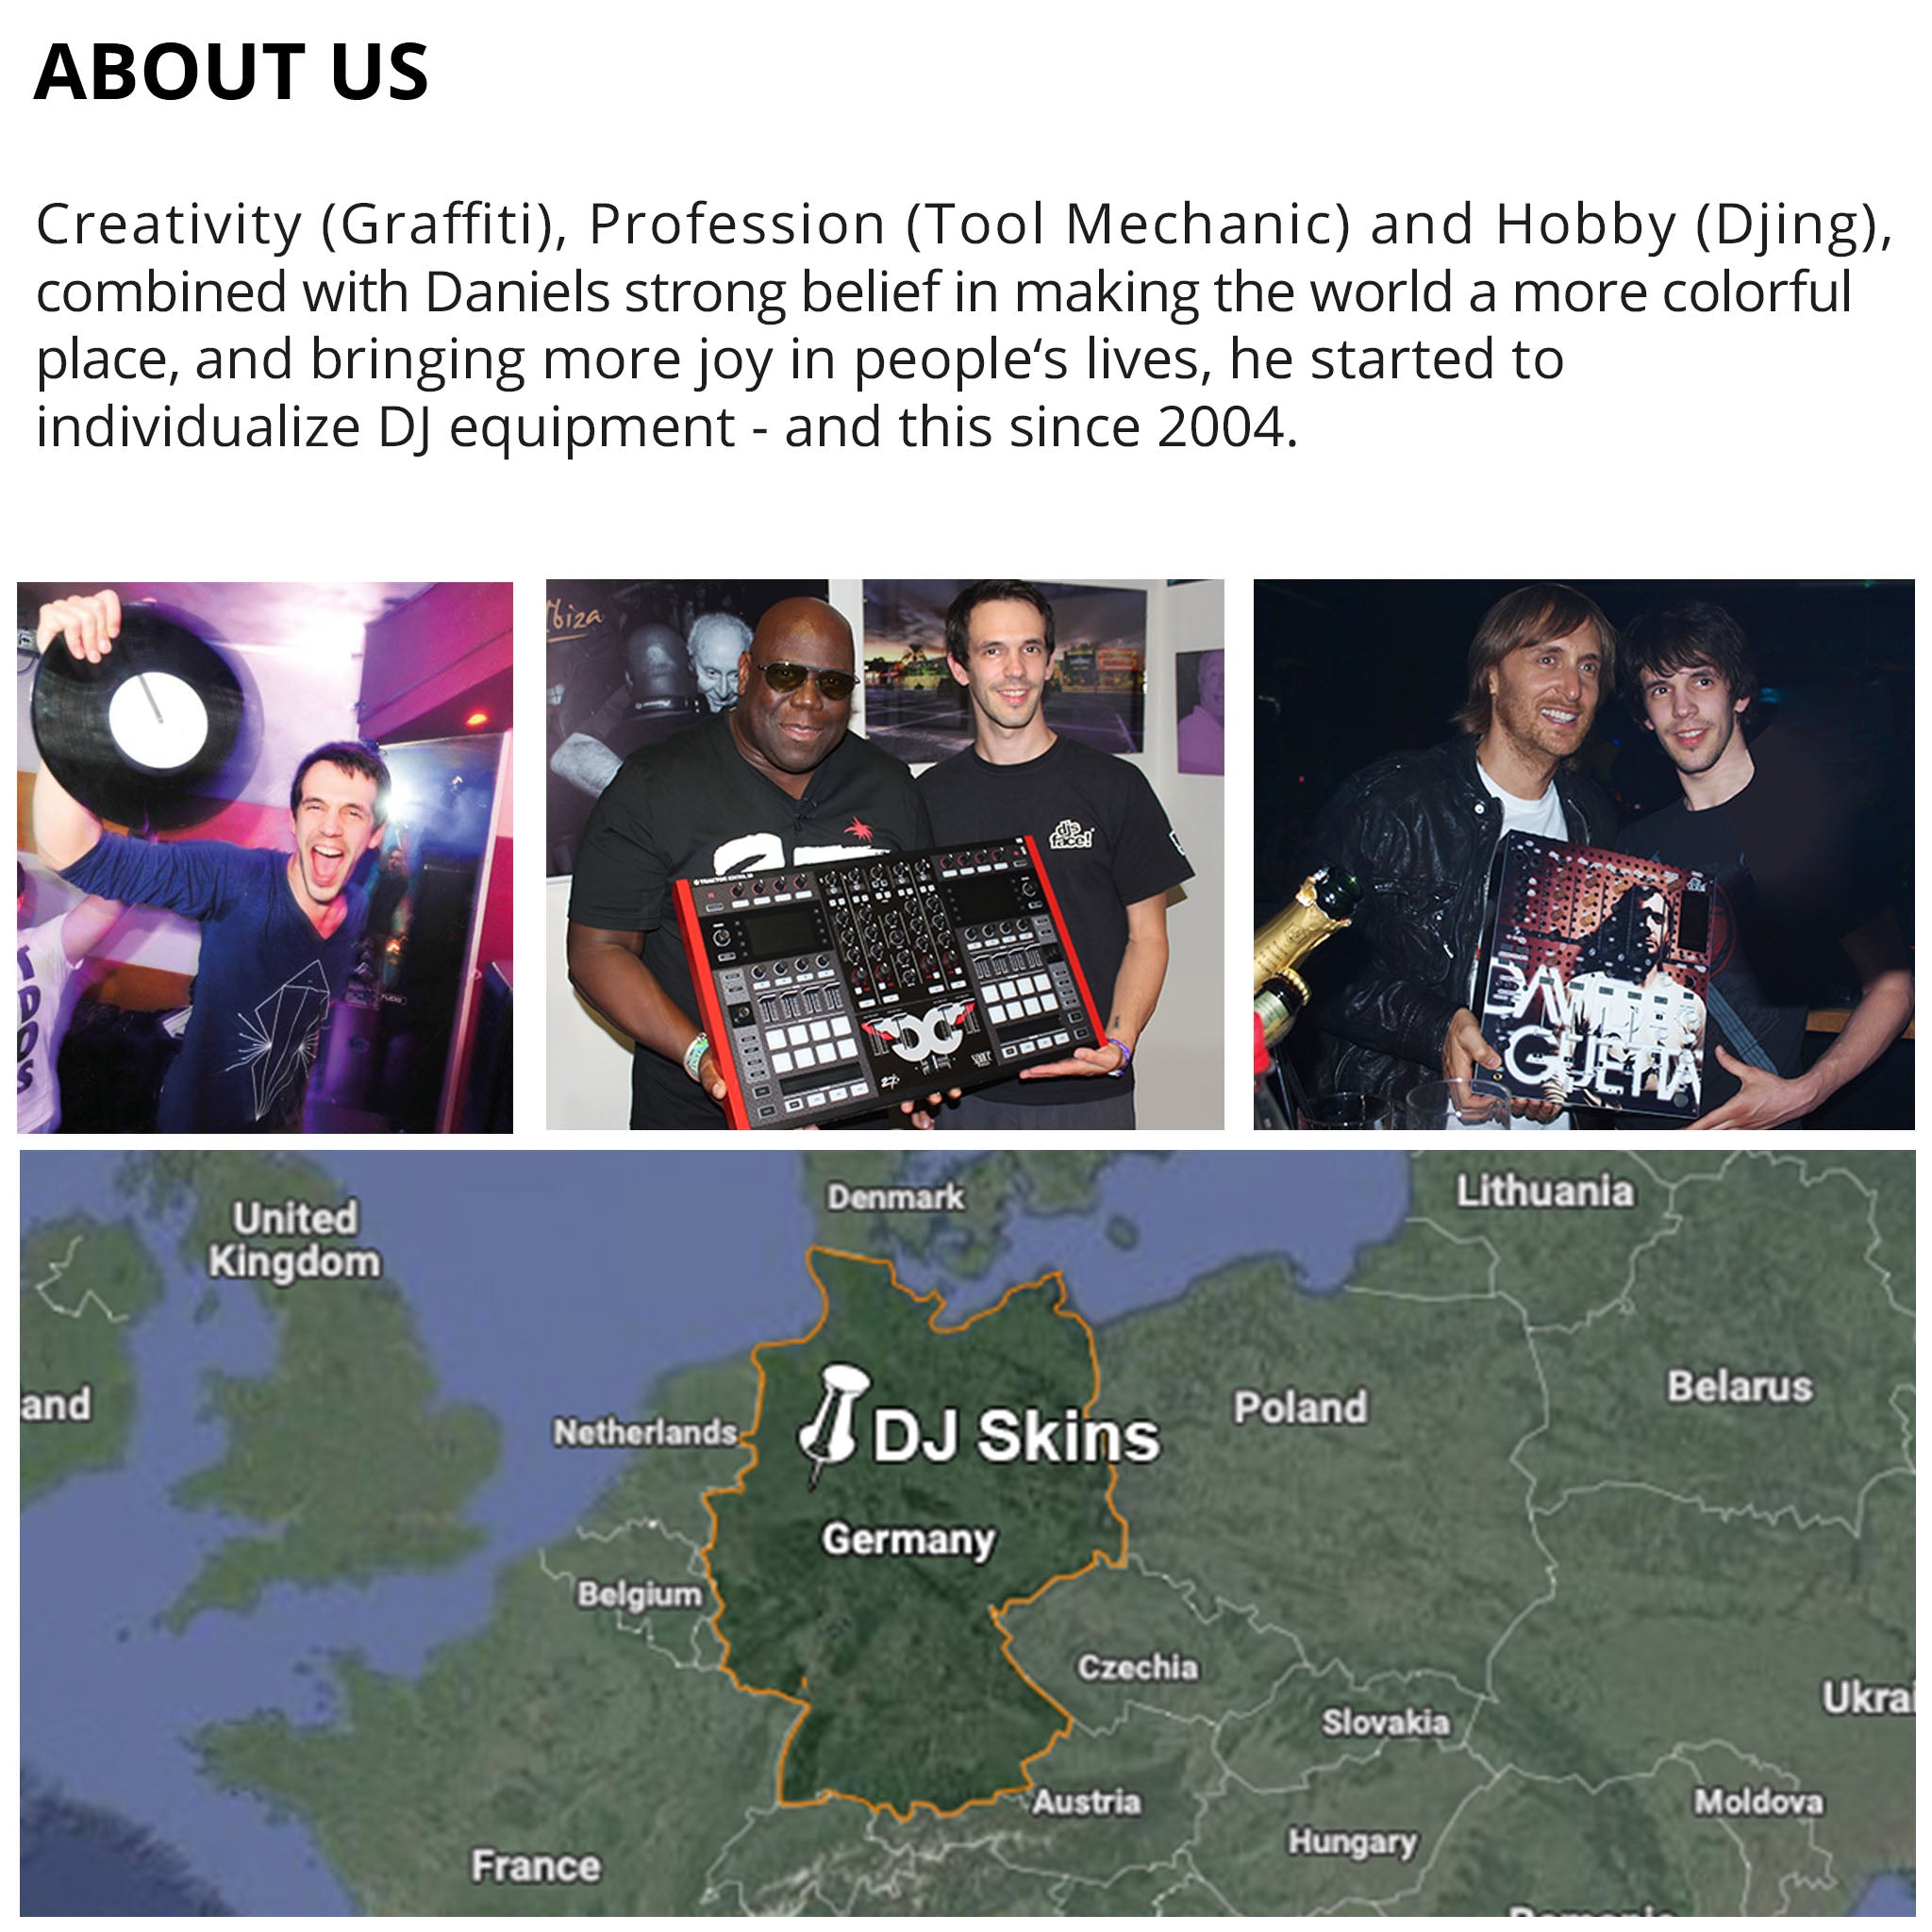 Pioneer DJ DDJ SX 2 Skin Reverb